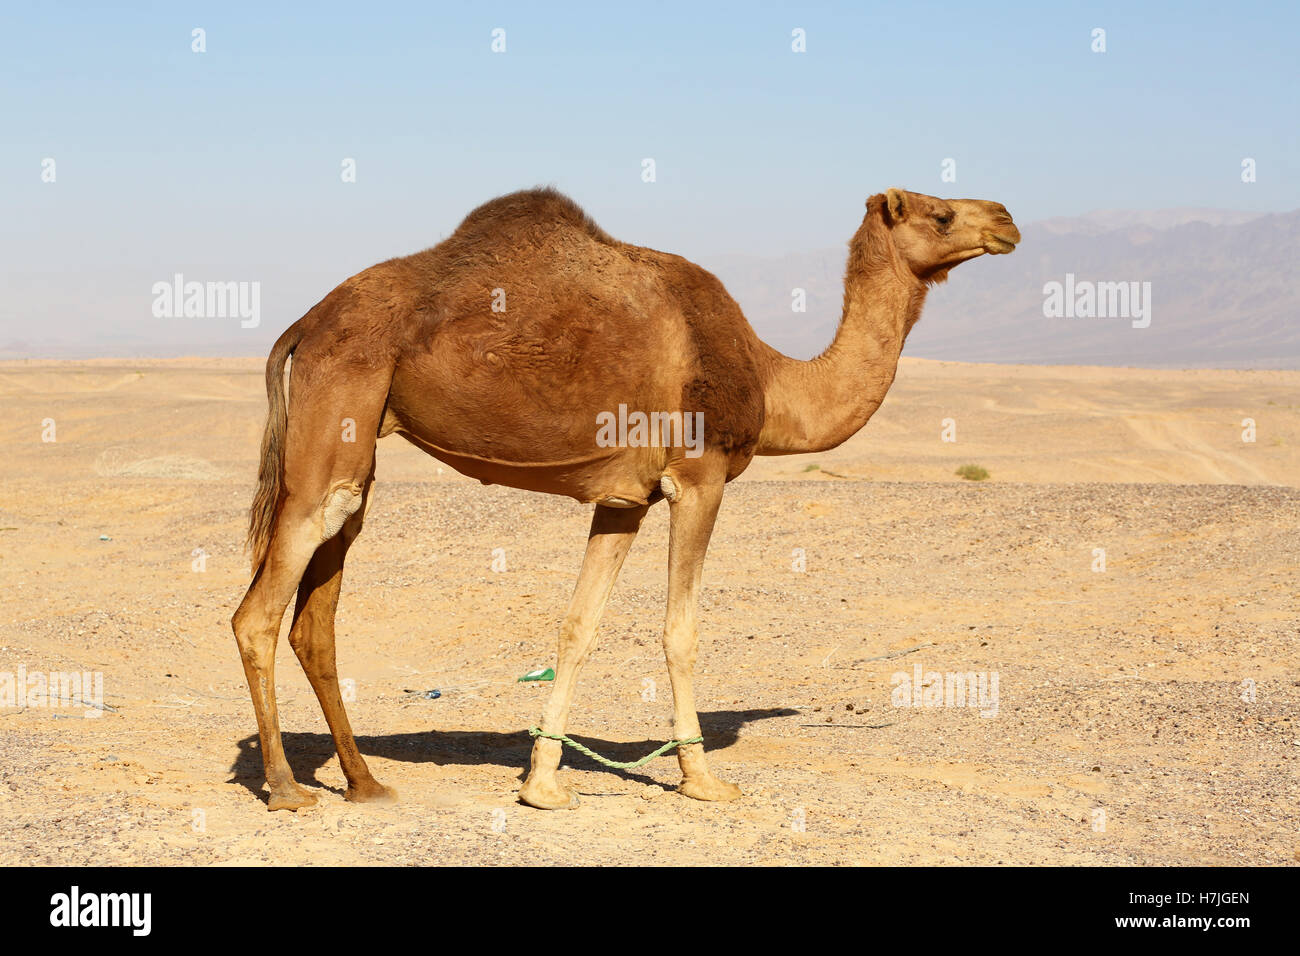 Camel in the desert in Amman, Jordan Stock Photo